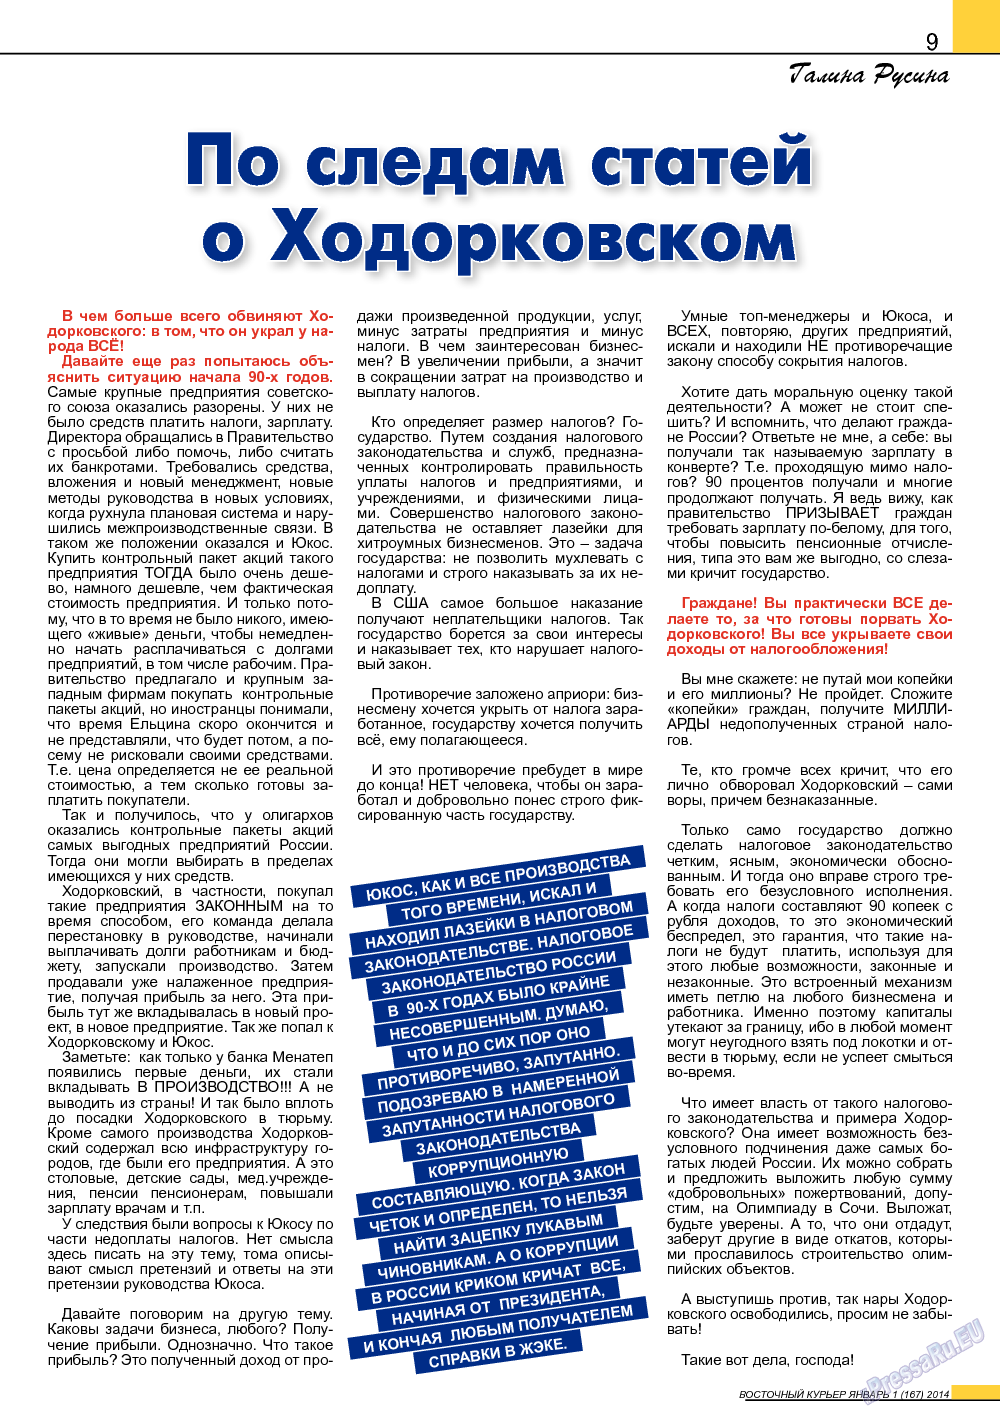 Восточный курьер, журнал. 2014 №1 стр.9